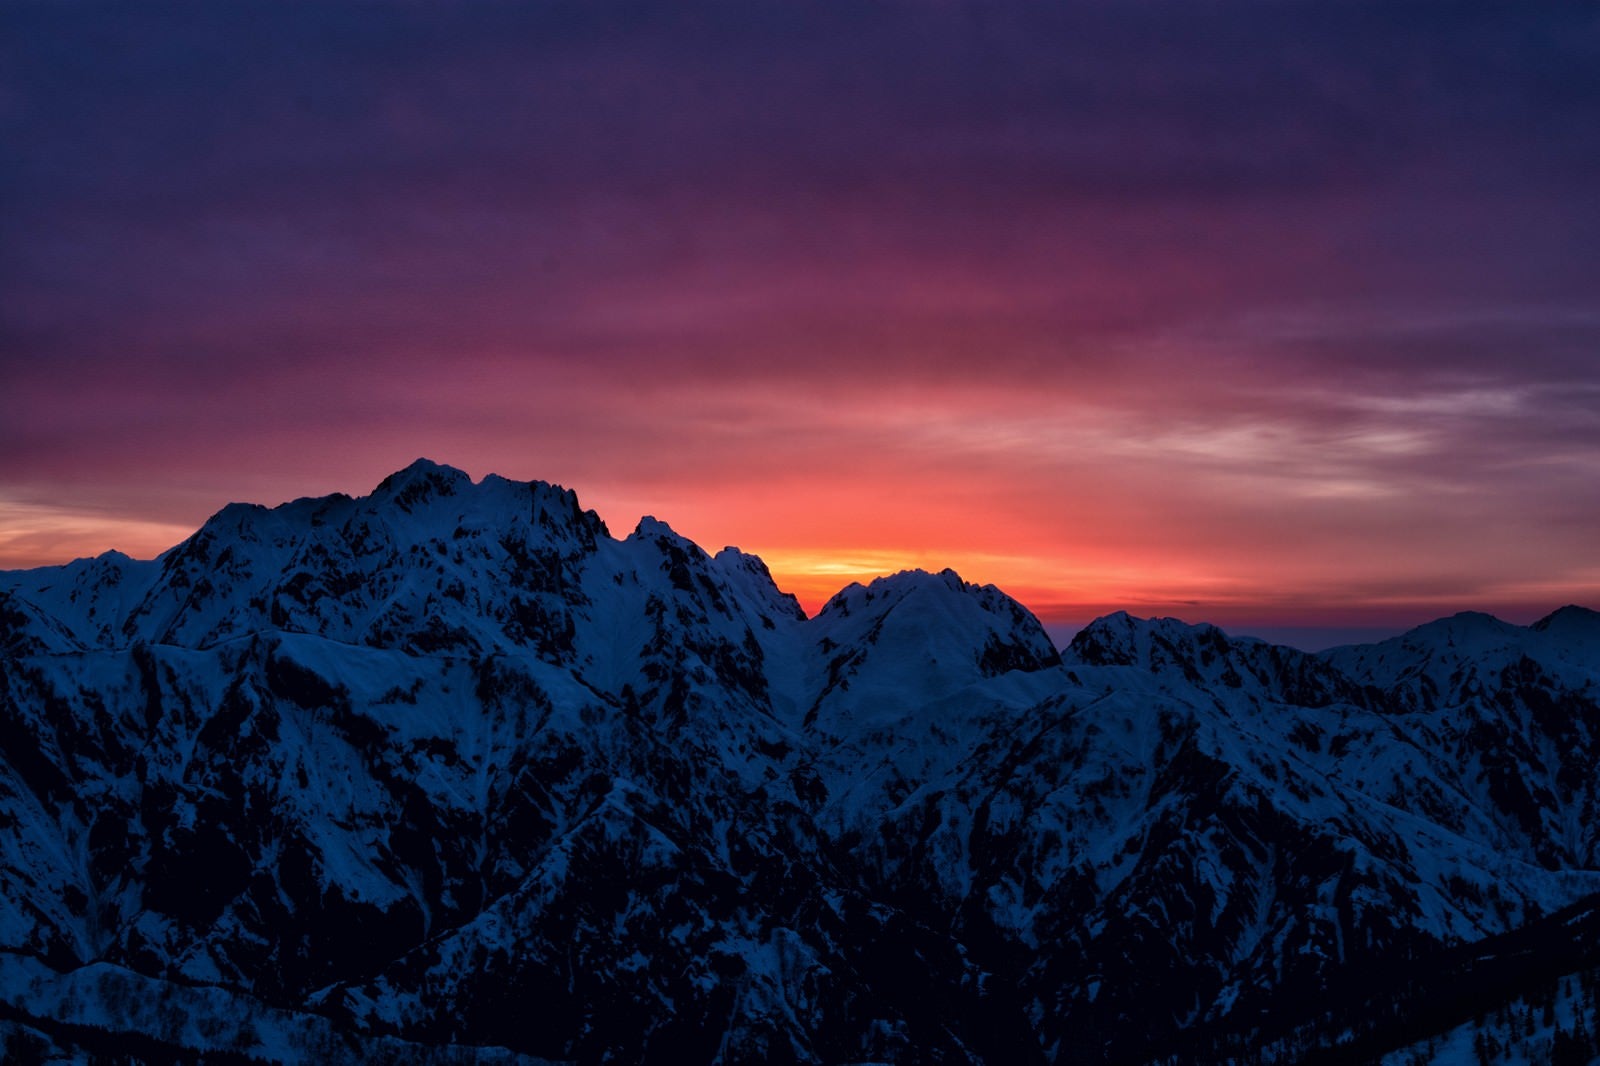 「剱岳に沈む夕日」の写真